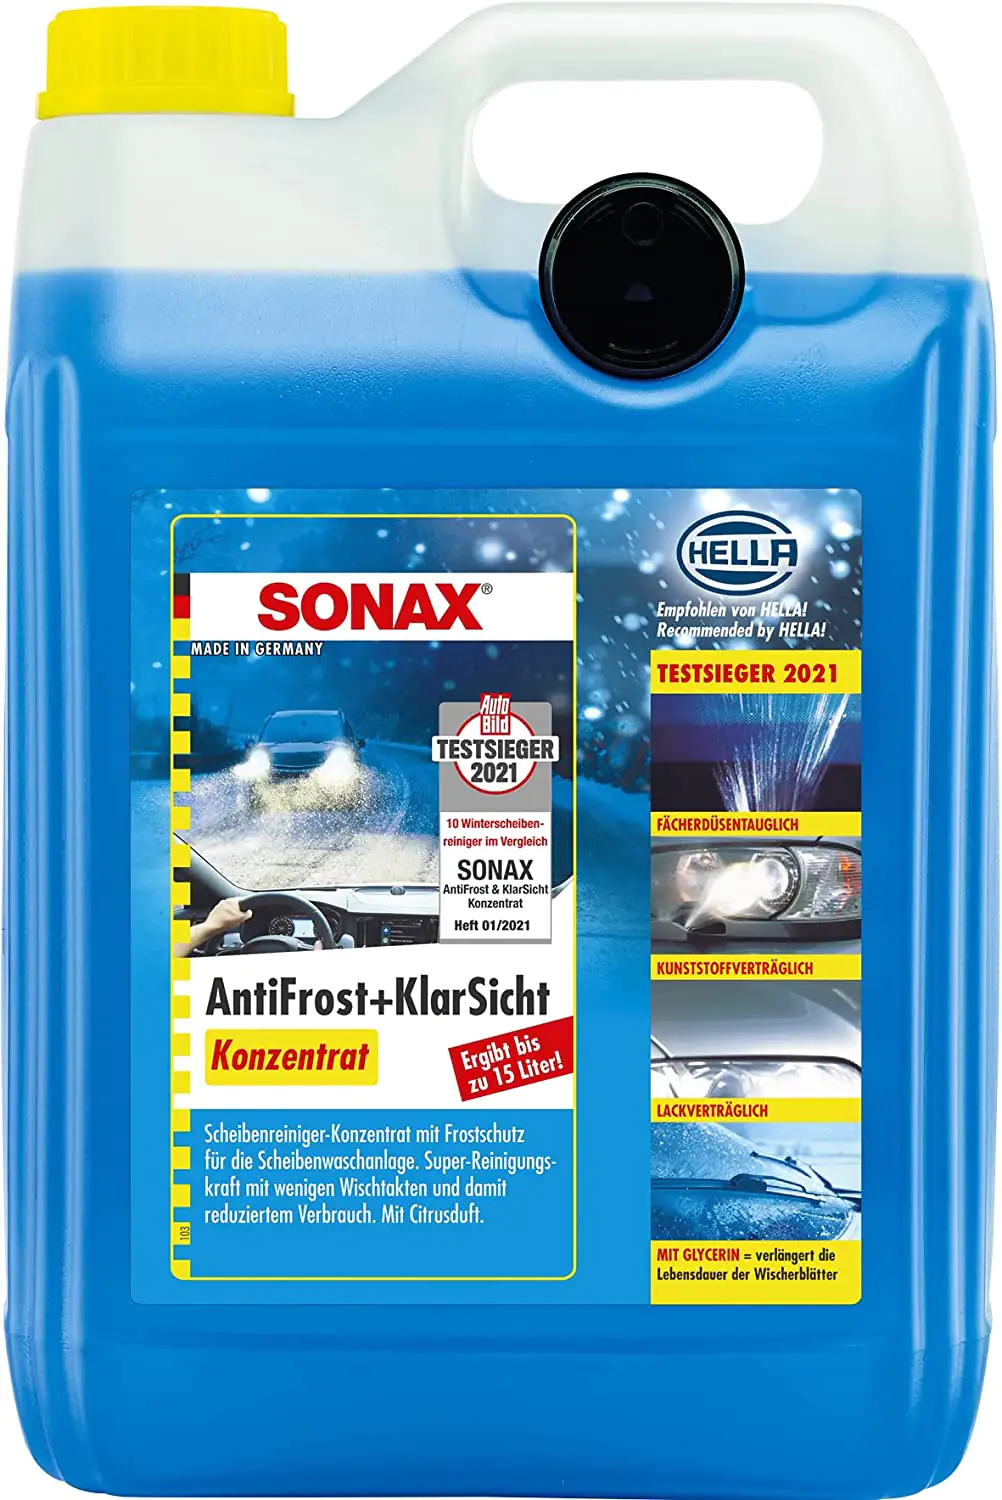 Sonax Scheibenreiniger Antifrost + Klarsicht Konzentrat 1:2 5L kaufen